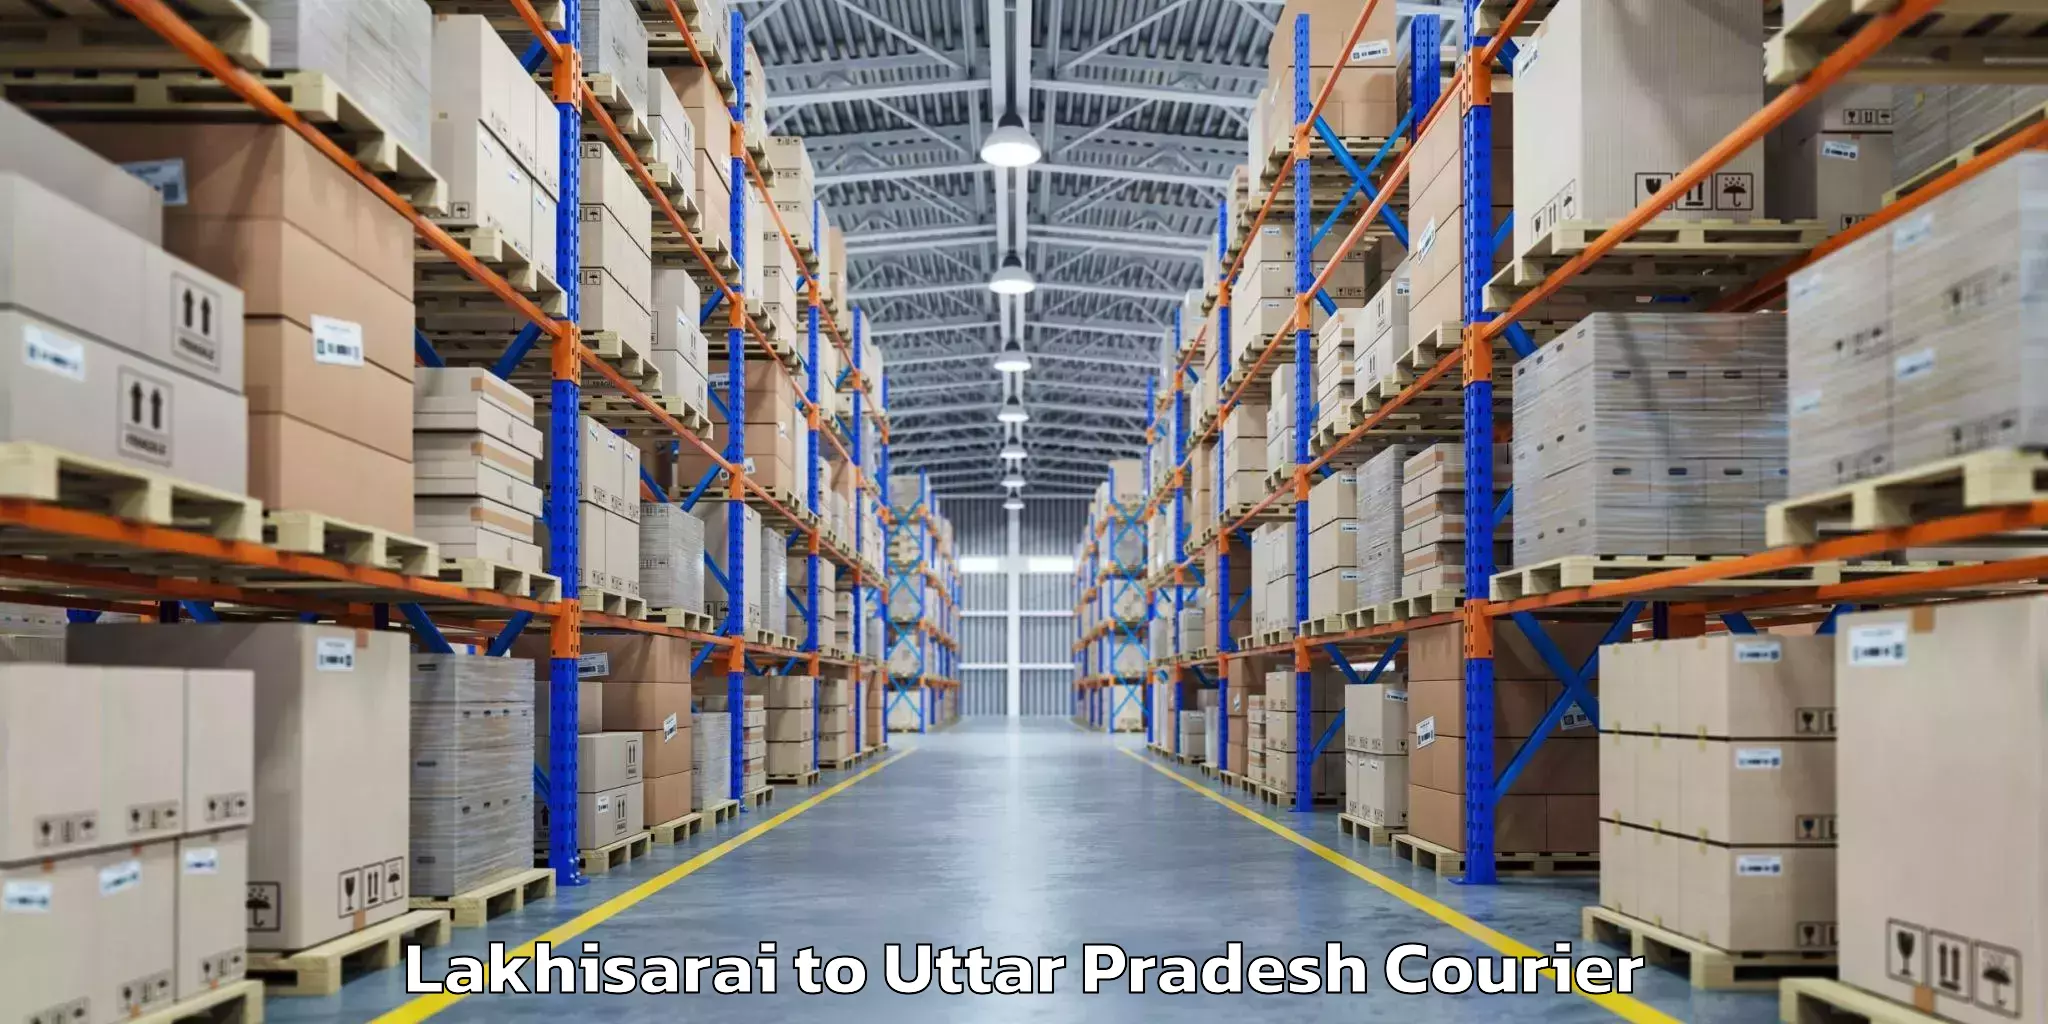 Luggage forwarding service Lakhisarai to Anupshahar